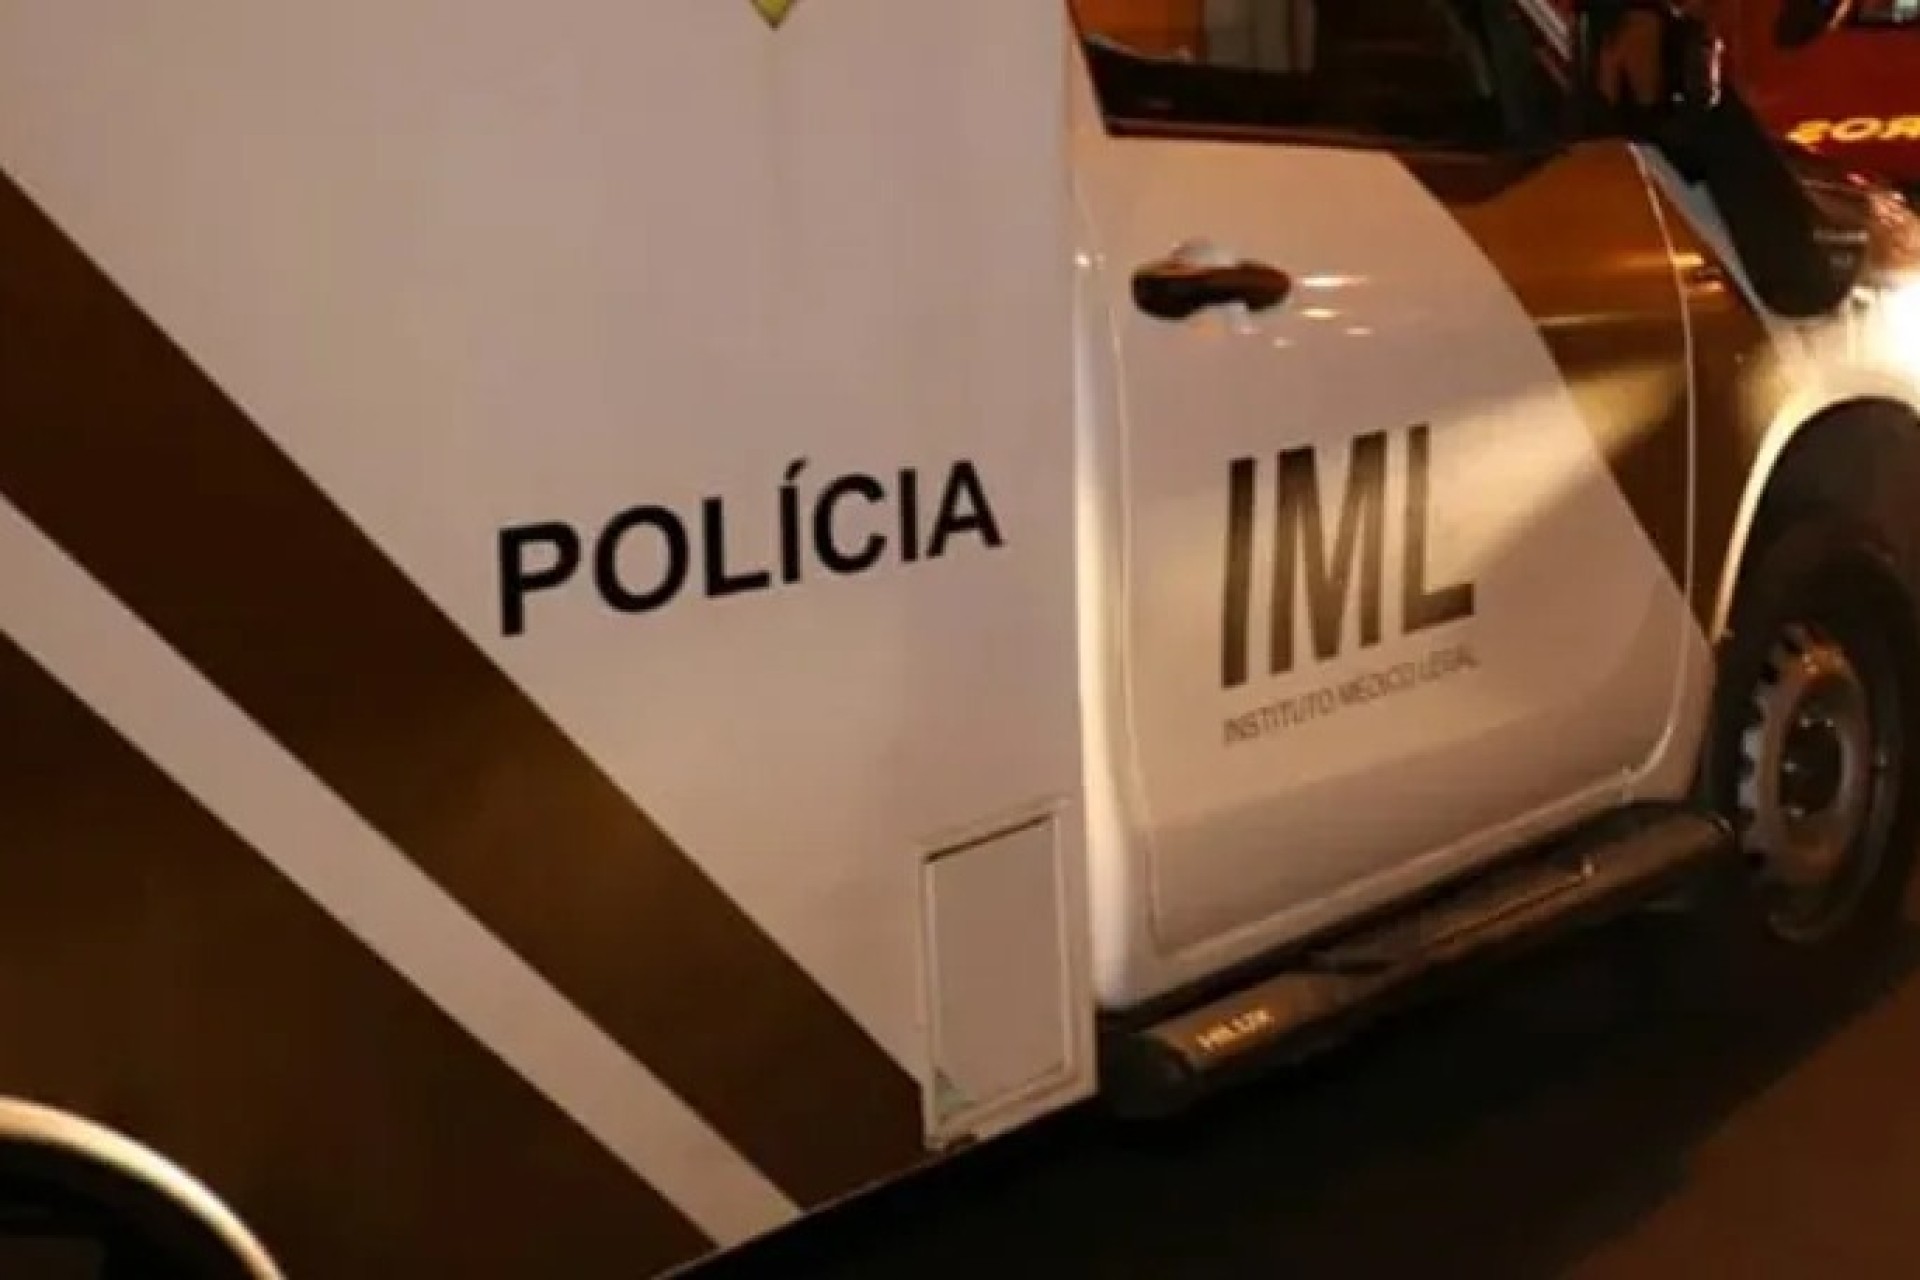 Paraná: Dois bandidos são mortos em confronto com PM na PR-444